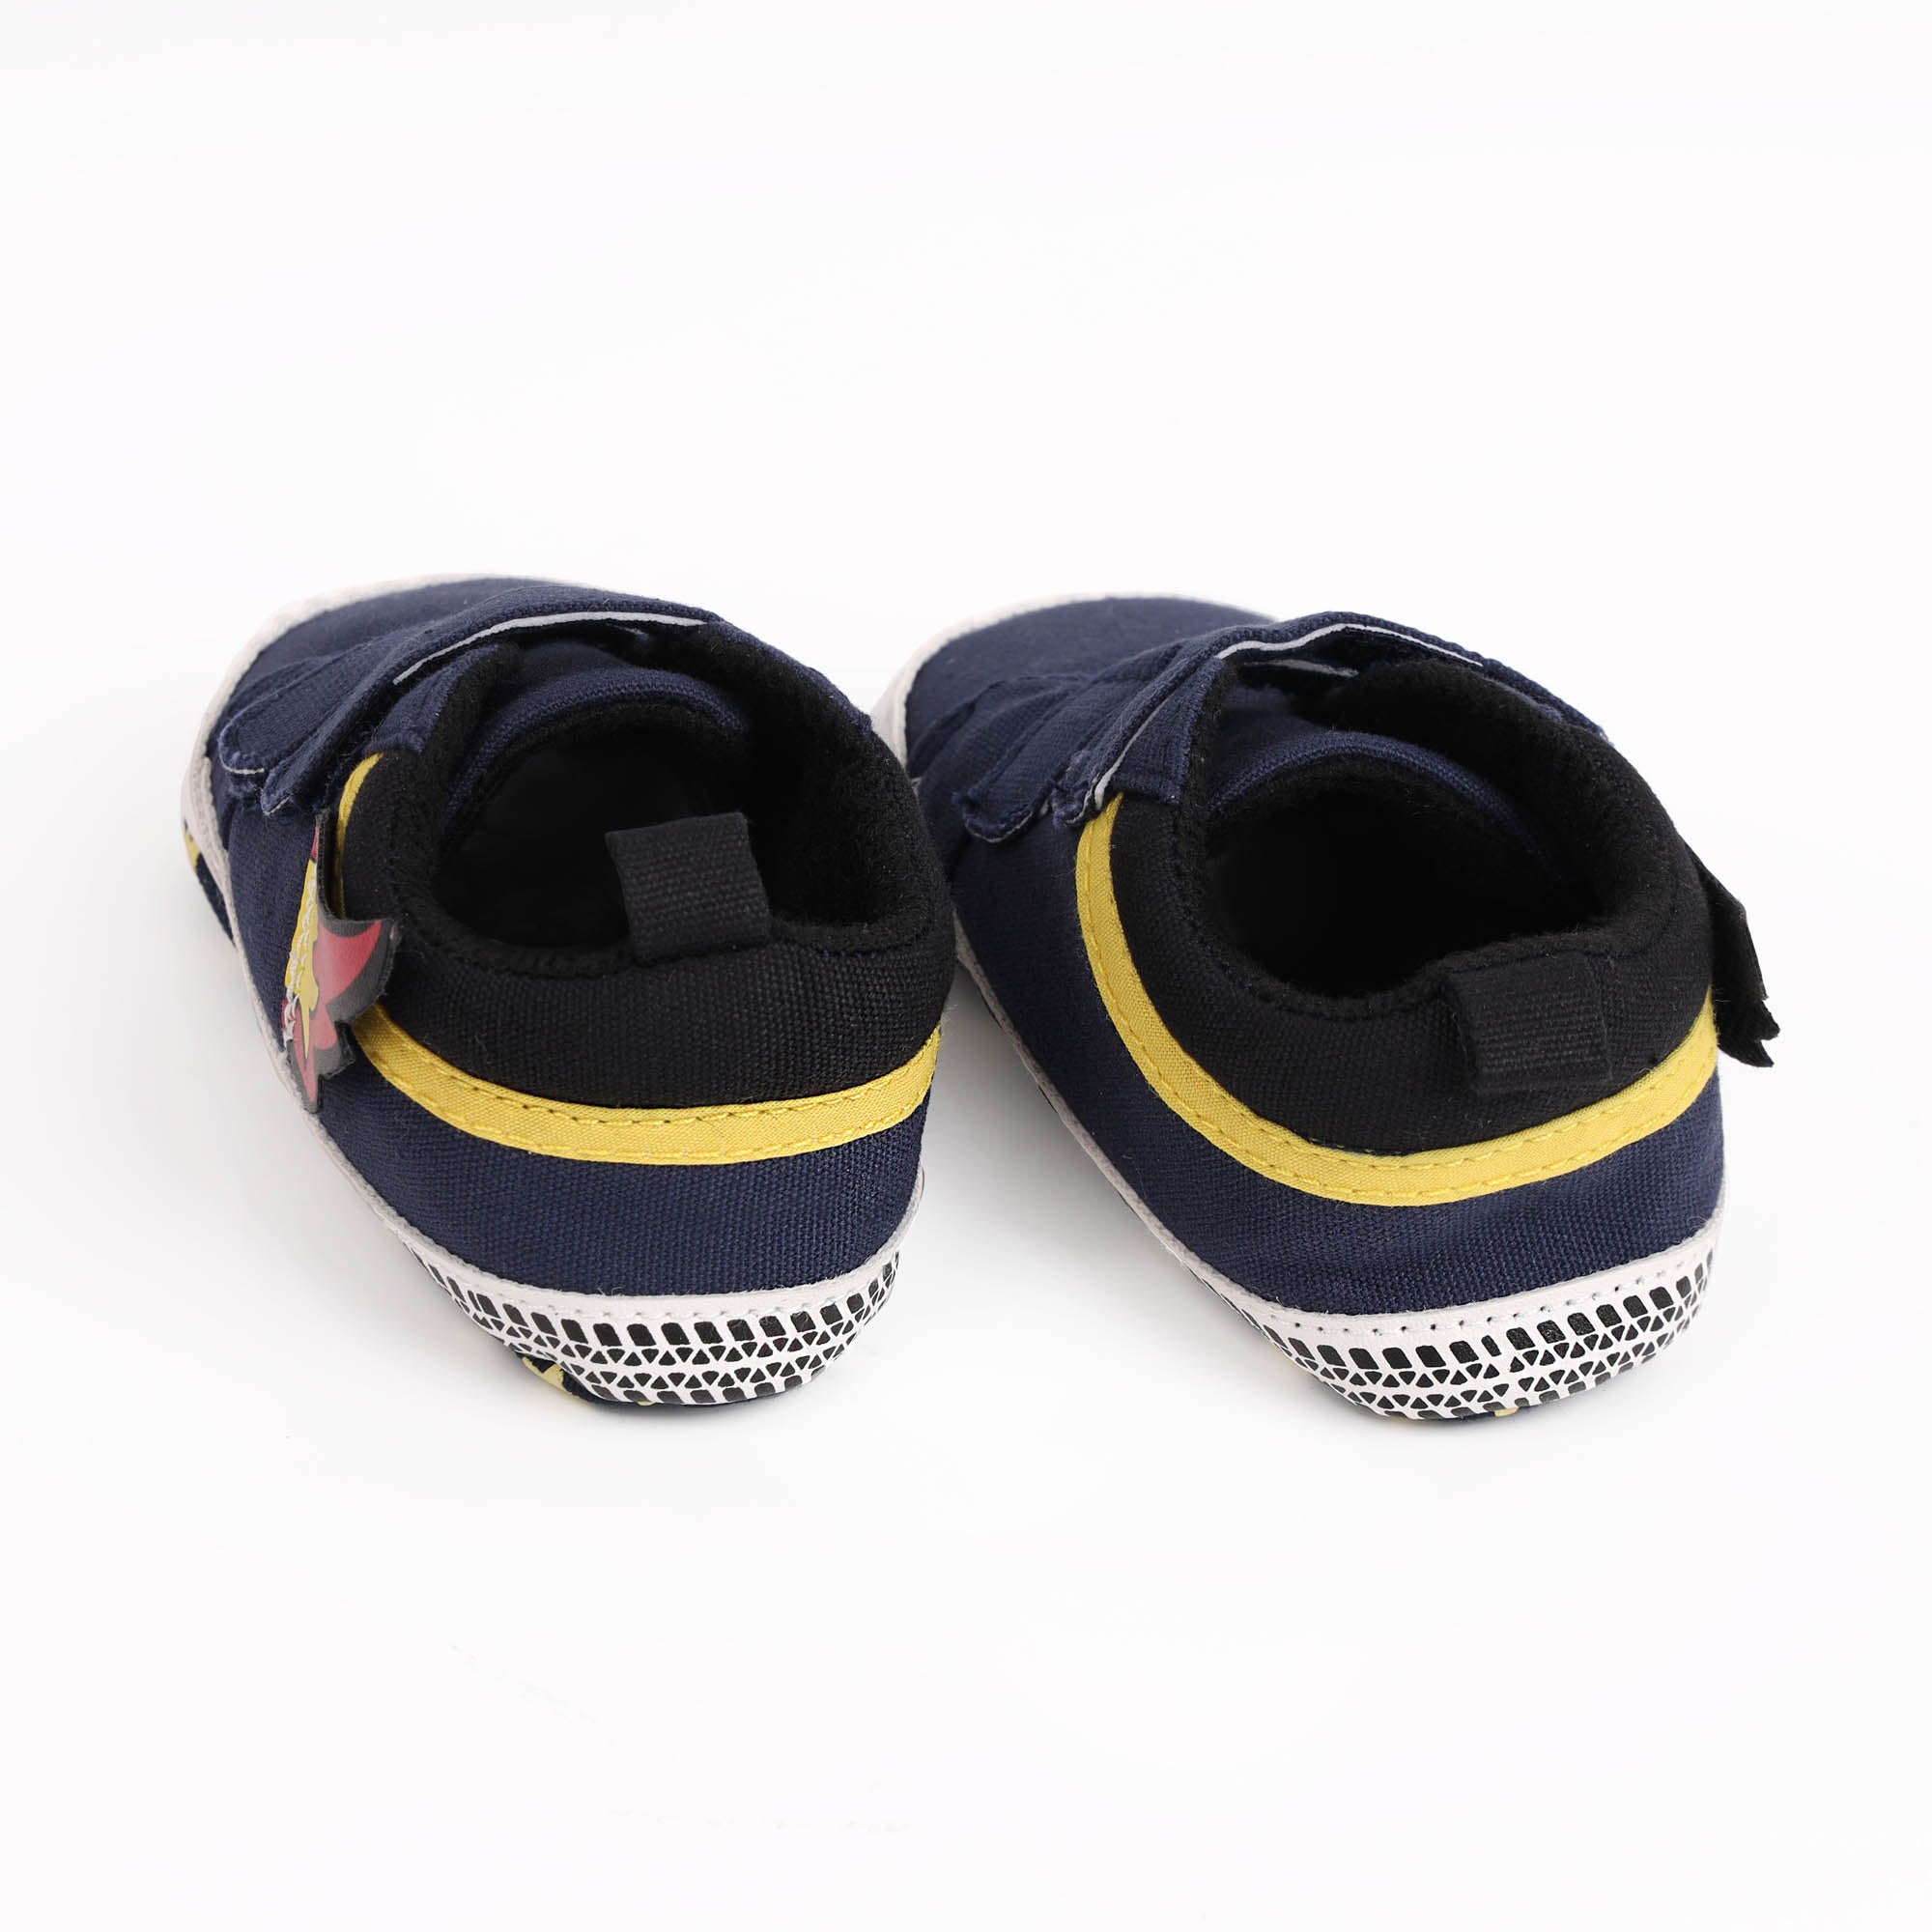 Kicks & Crawl- Flaming Navy Baby Shoes